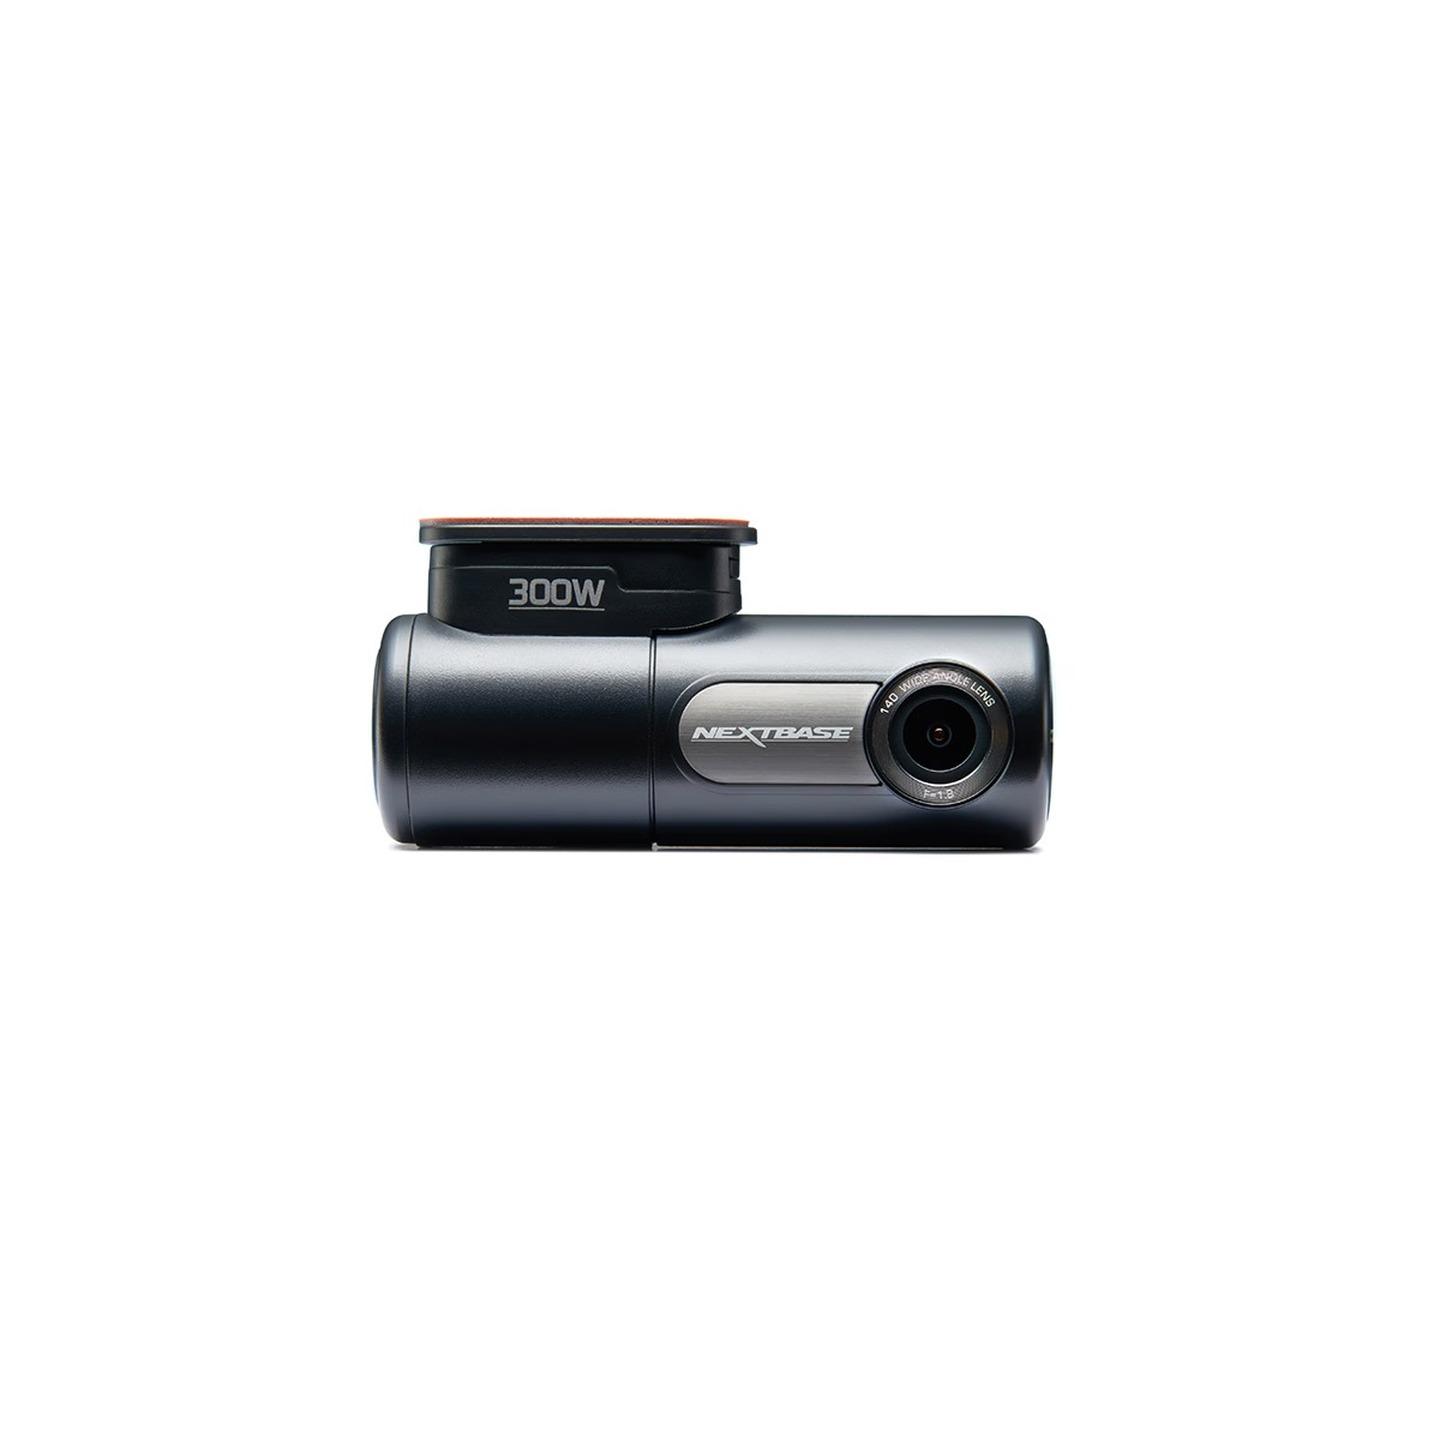 Nextbase Full High Definition Dash Camera 300W